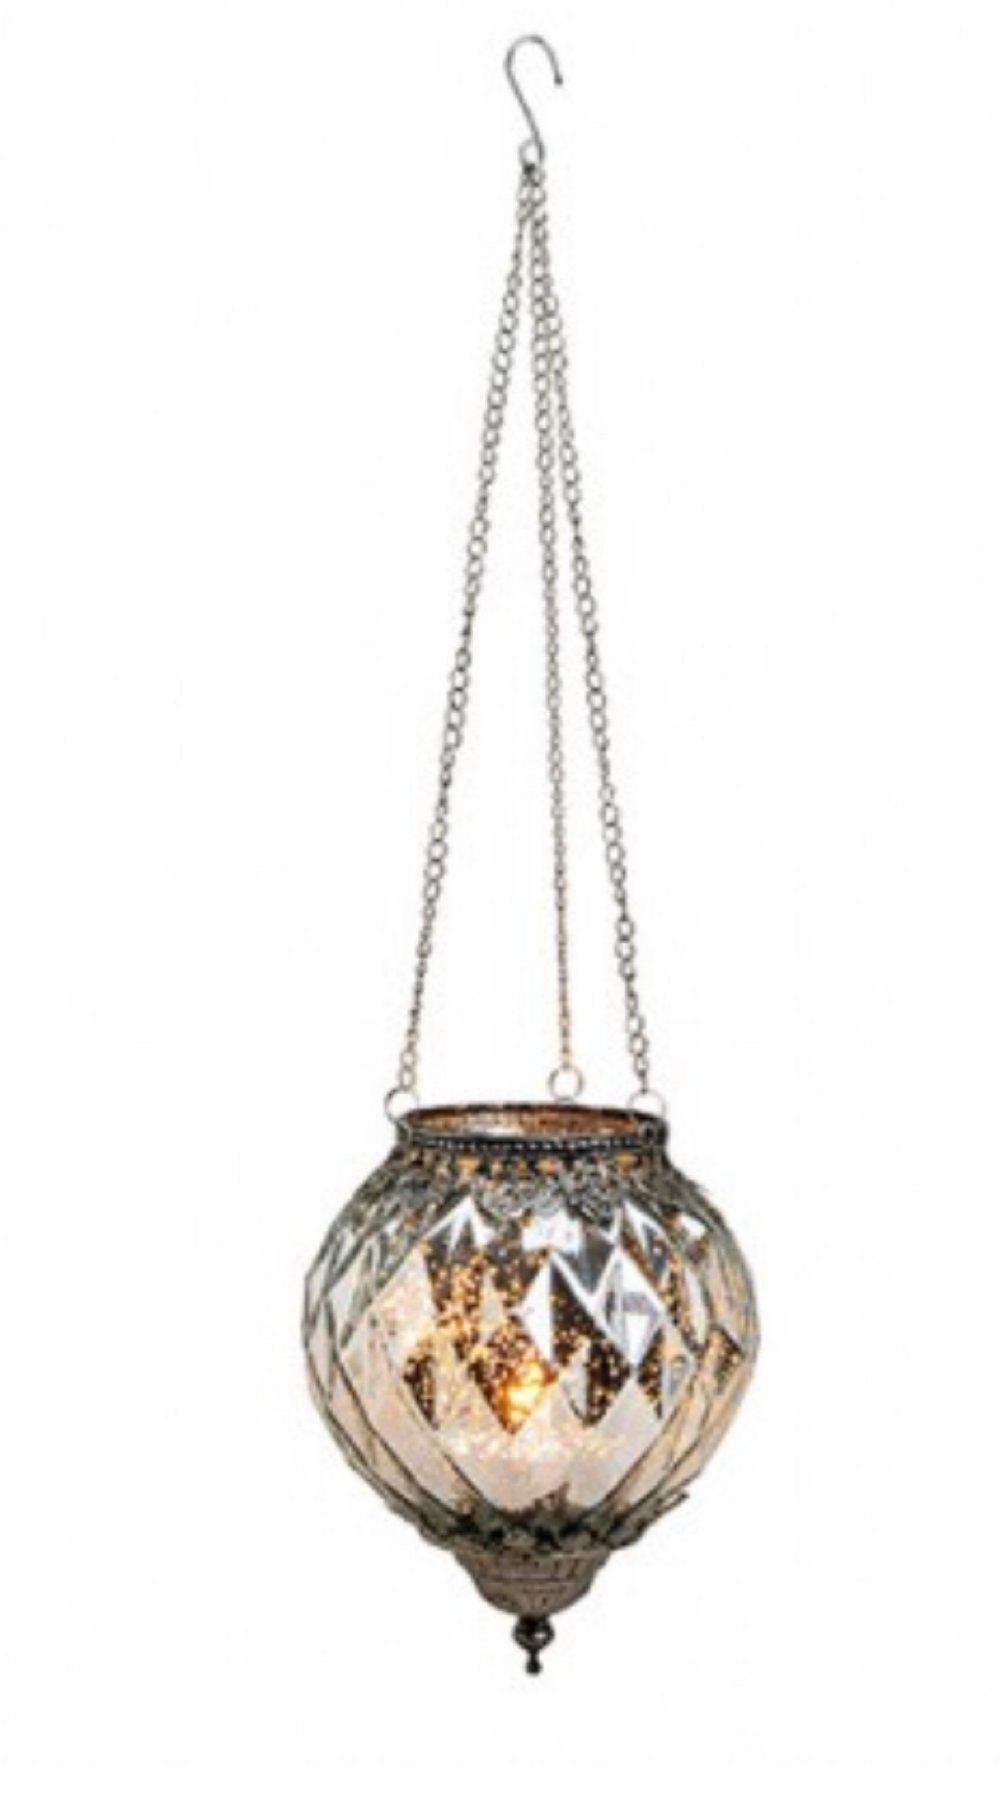 Windlicht Teelichthalter m Rosendekor Chic Antqiue Kerzenglas Metall/ Glas 